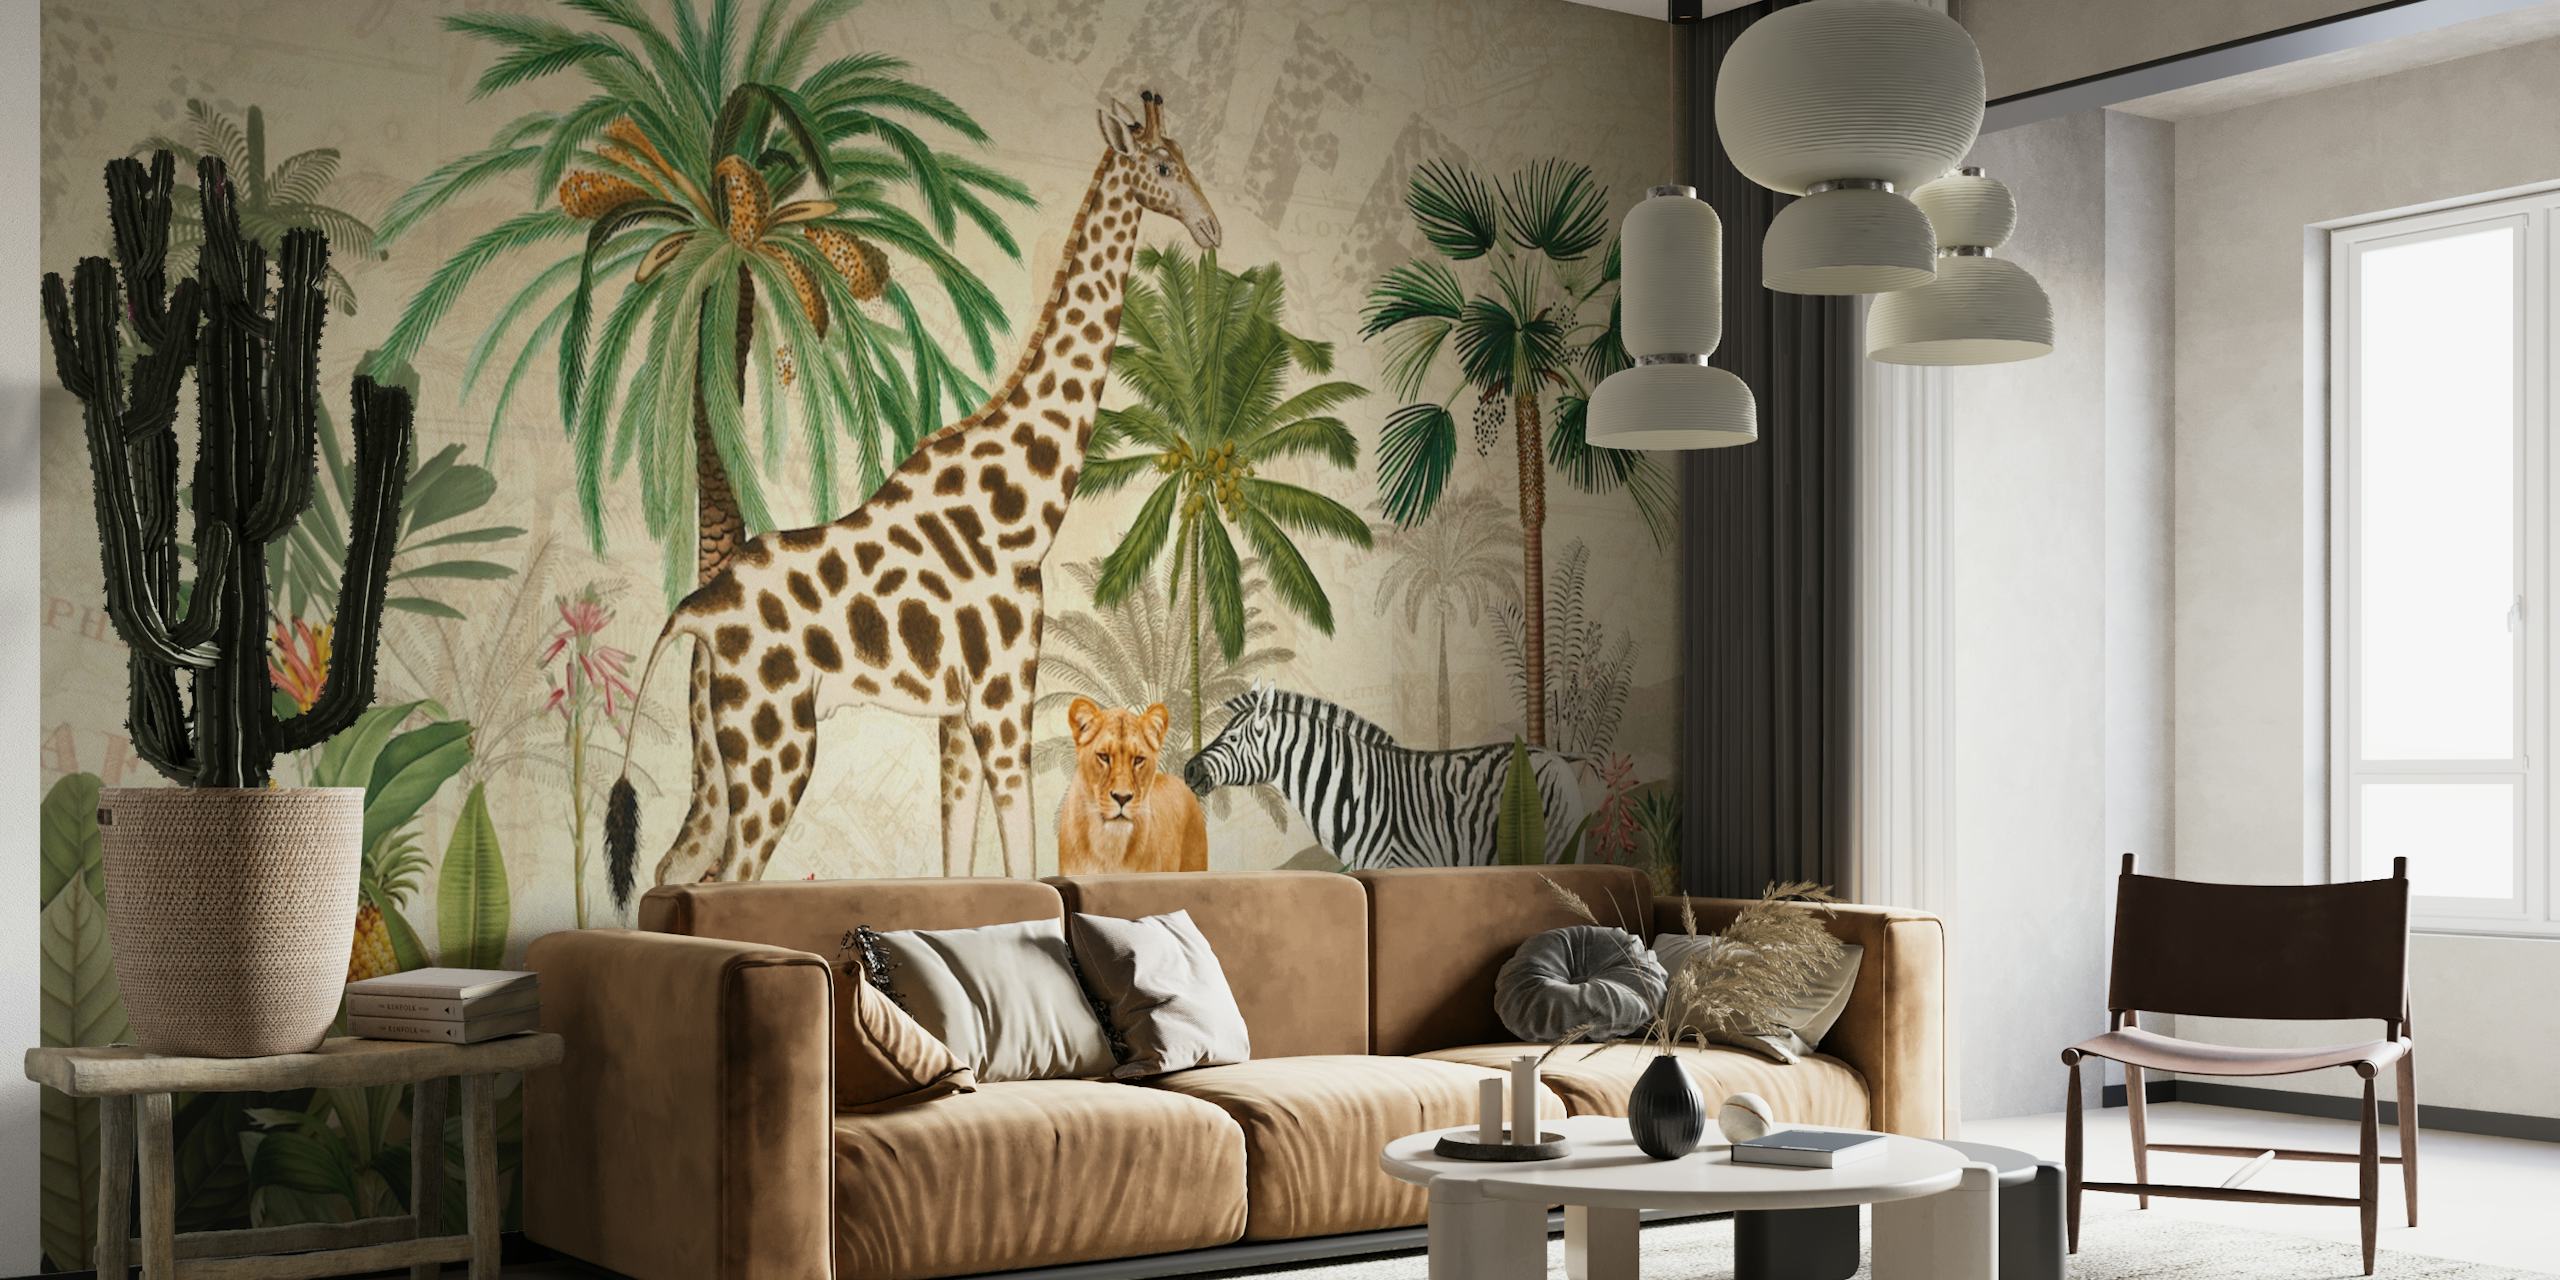 Fototapete im Vintage-Stil im Dschungelsafari-Stil mit Giraffen, Leoparden und Zebras in einer üppigen Umgebung